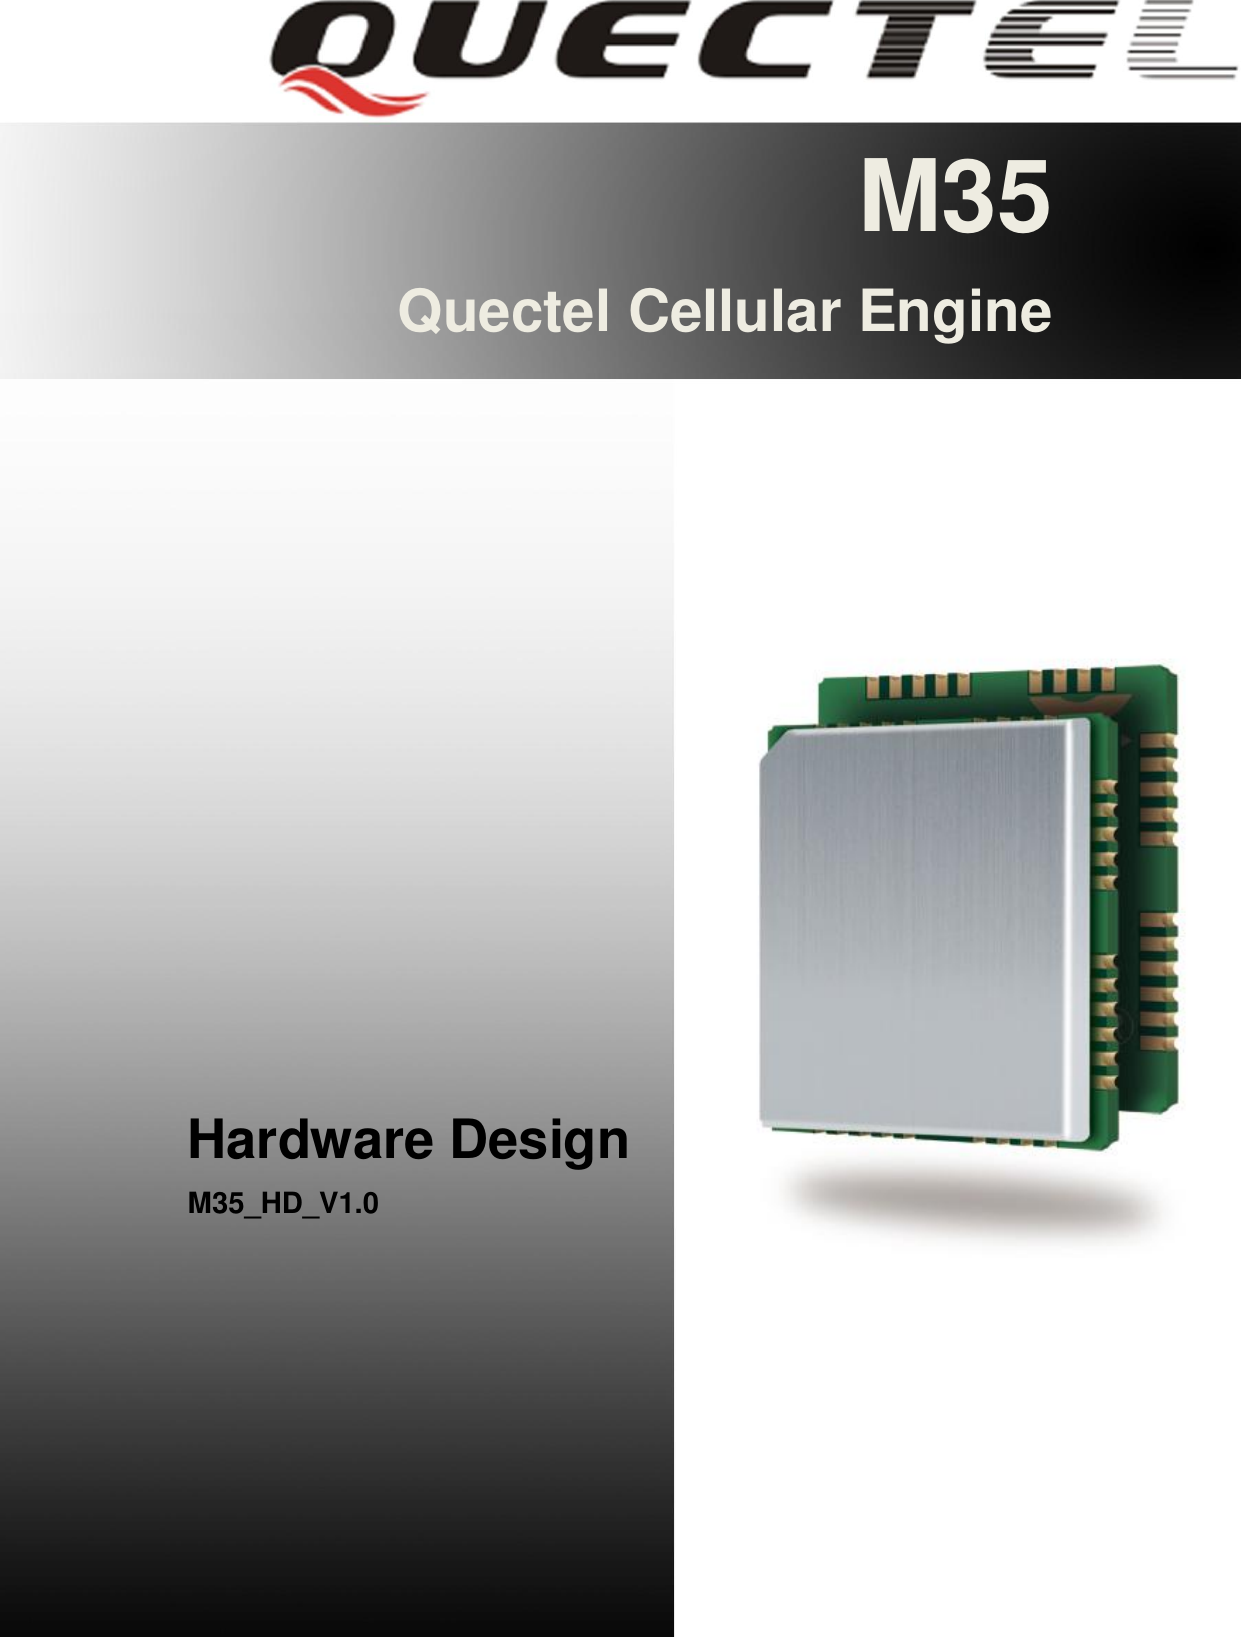 M35 Hardware Design                                                                                                         M35_HD_V1.0                                                                                                                         - 1 -       M35 Quectel Cellular Engine                   Hardware Design M35_HD_V1.0        